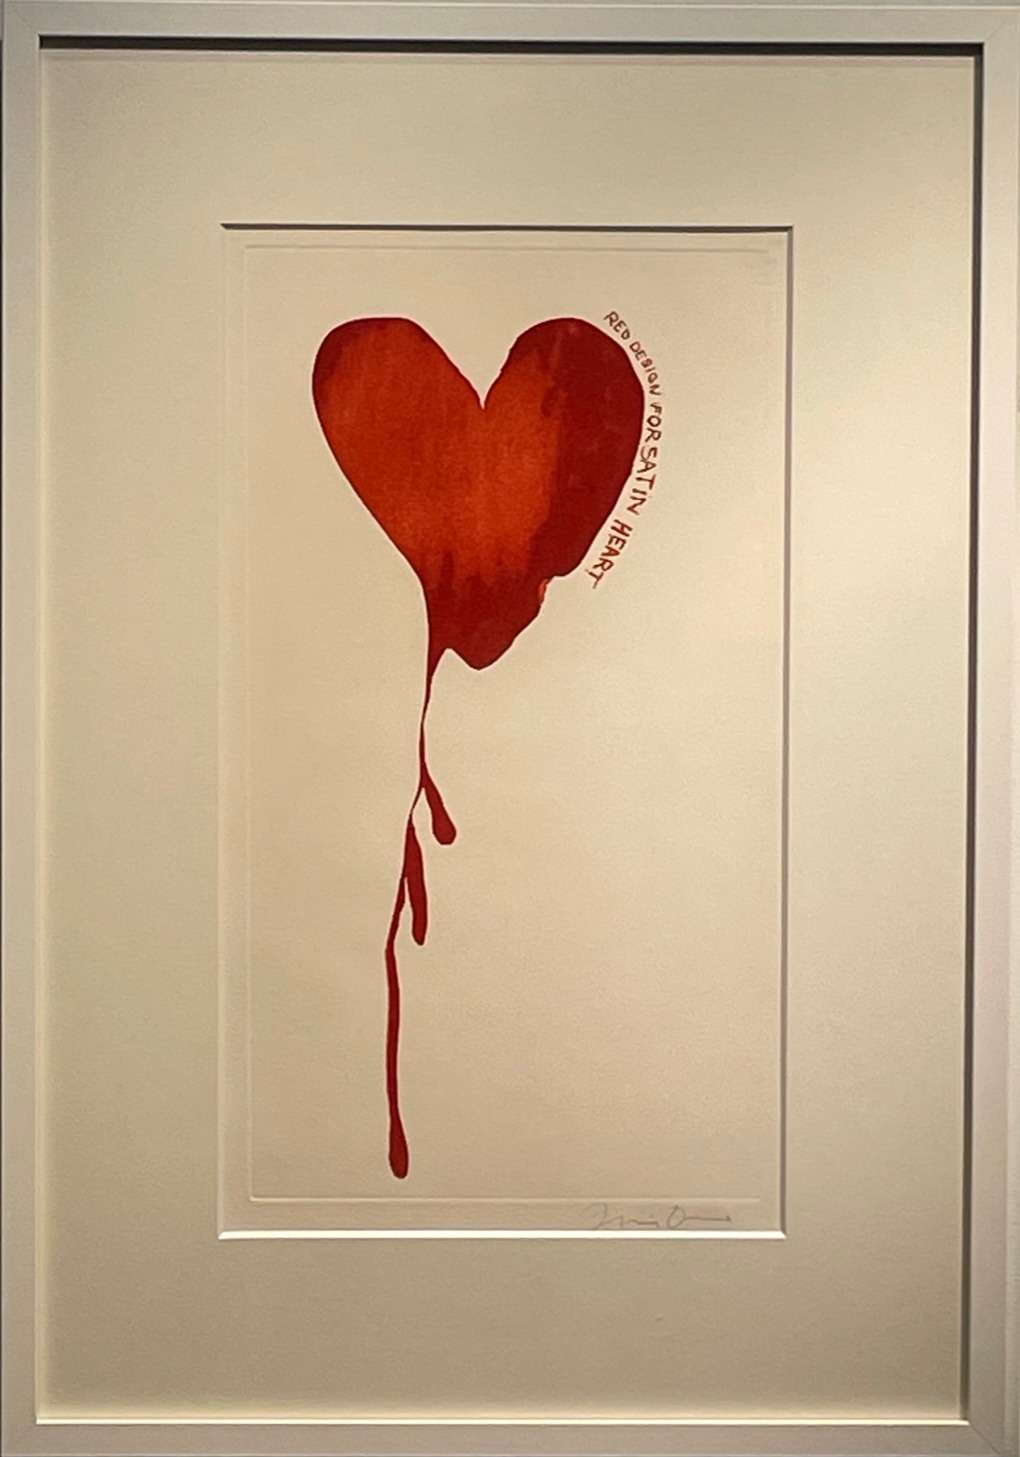 ジム・ダイン「Red Design for Satin Heart (from The Picture of Dorian Gray)」